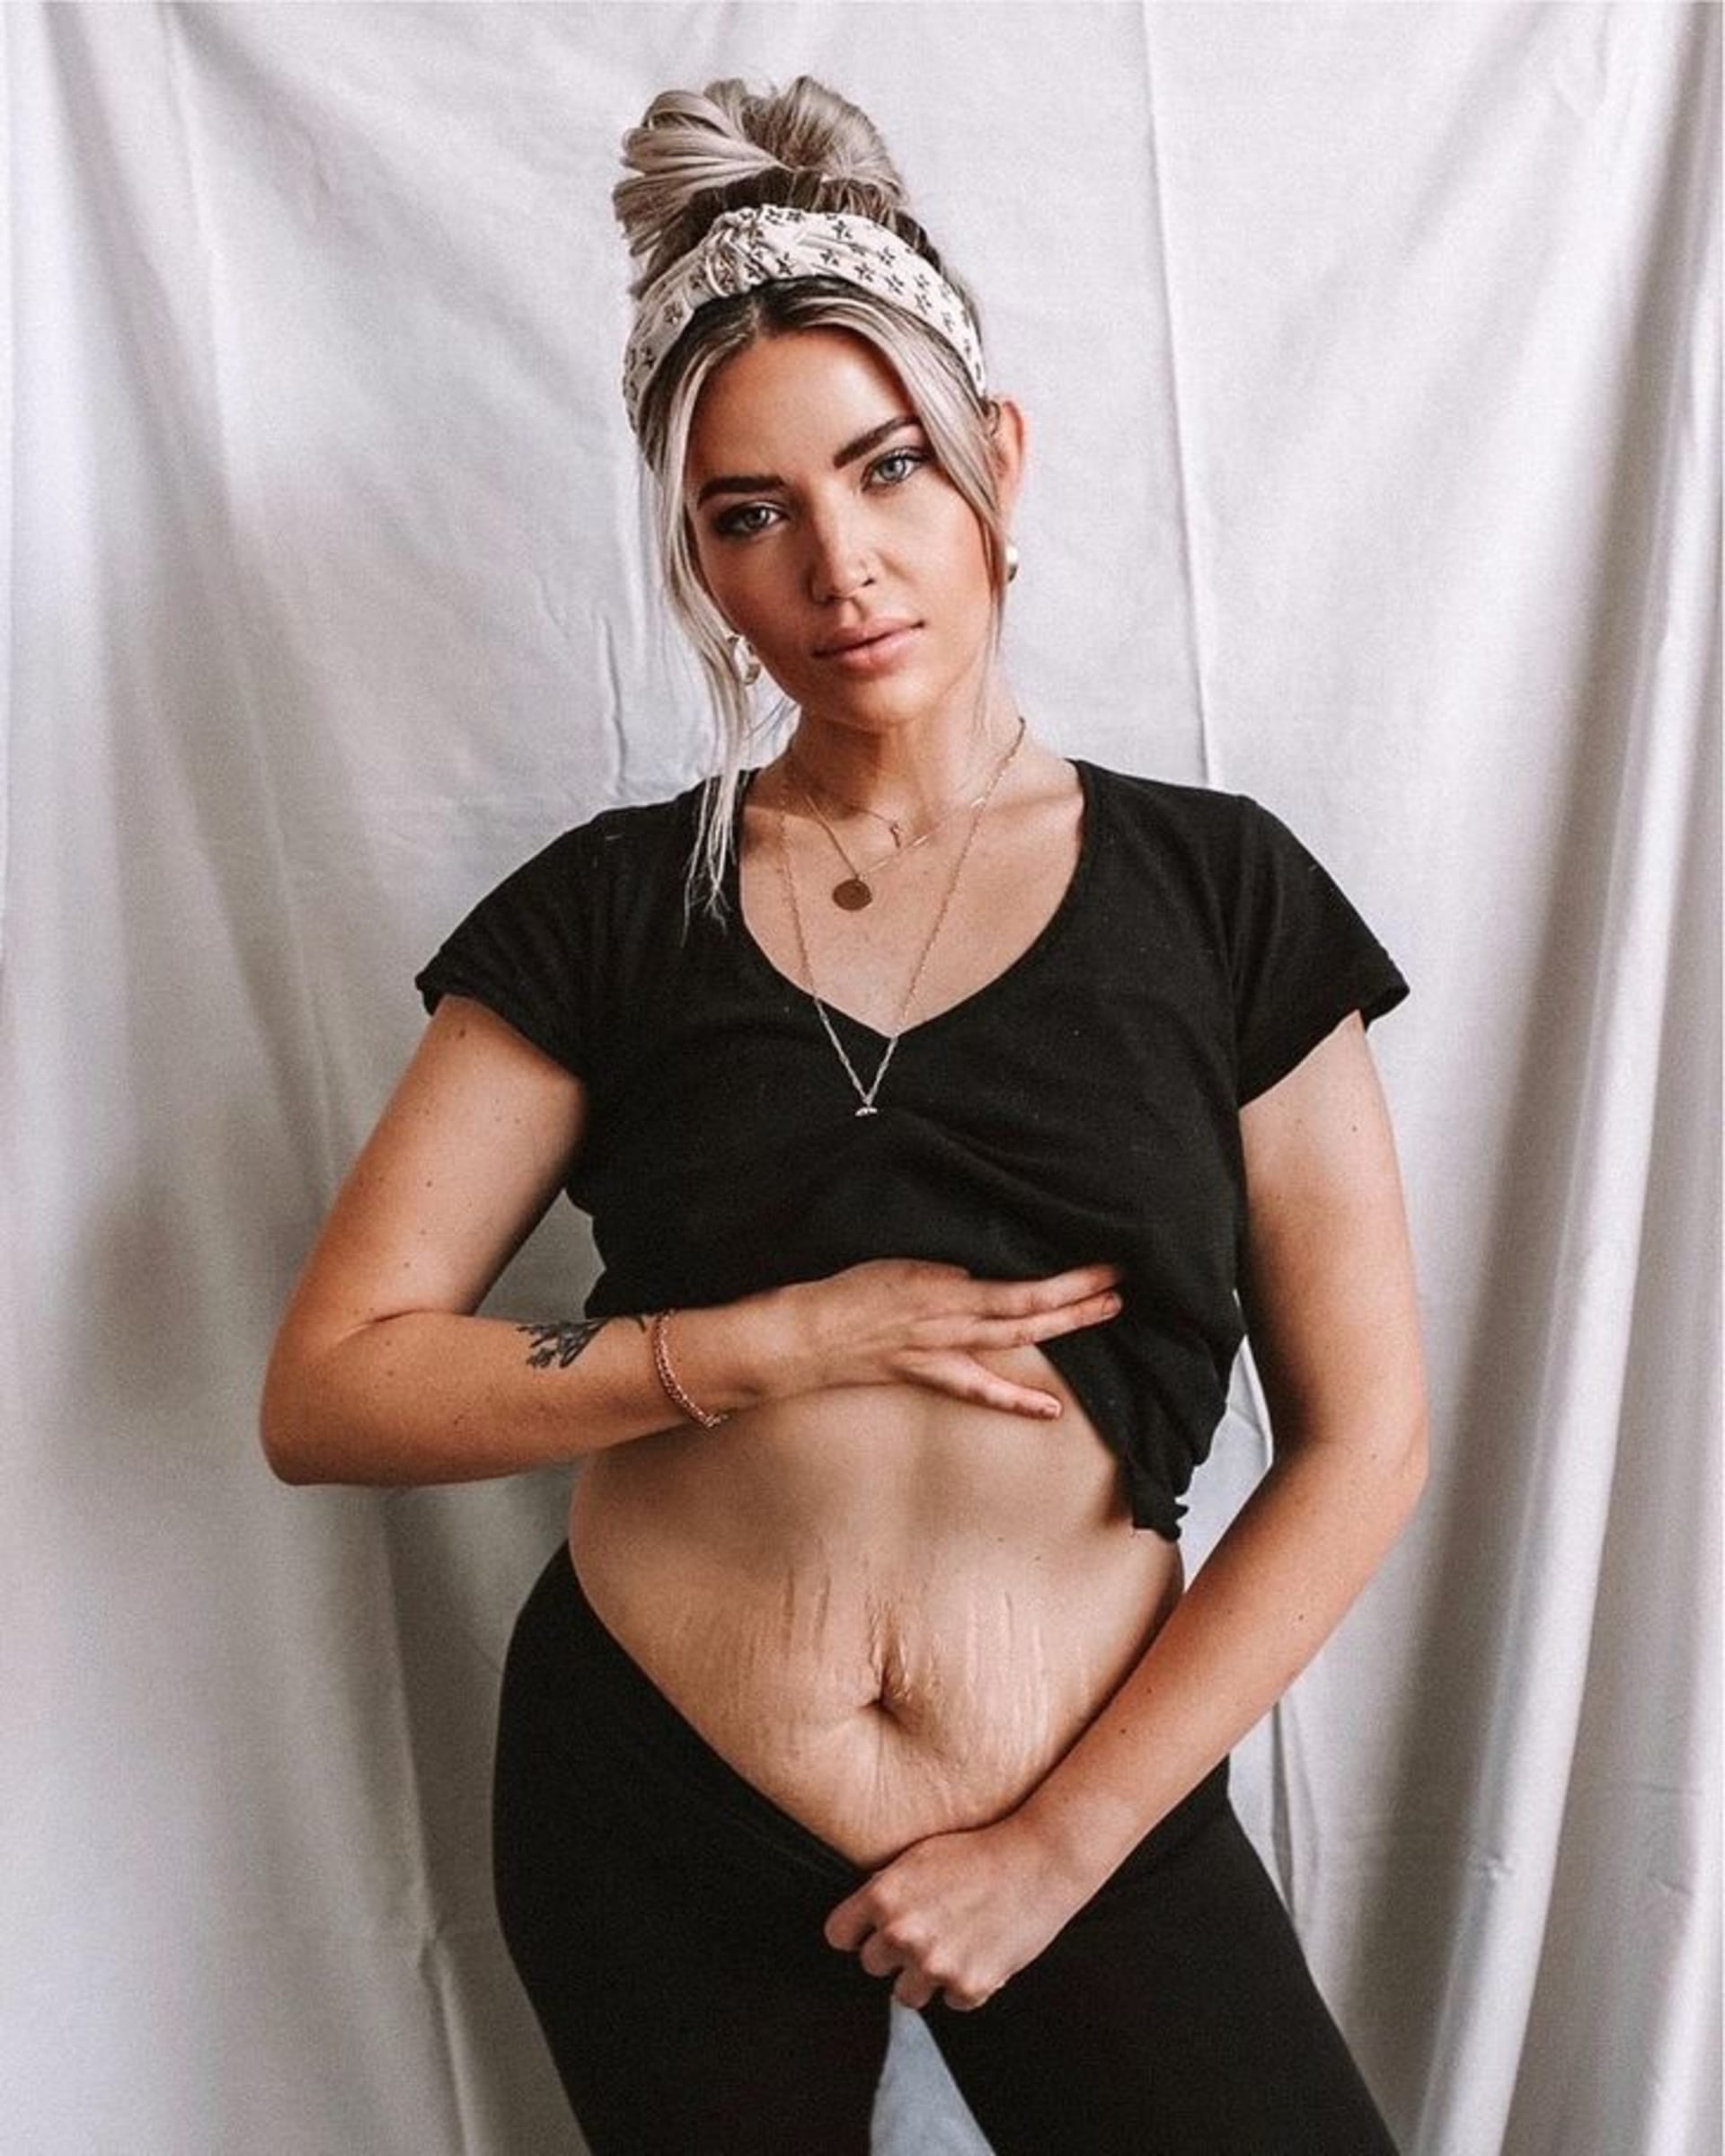 Žena hrdě ukazuje své tělo po porodu 4